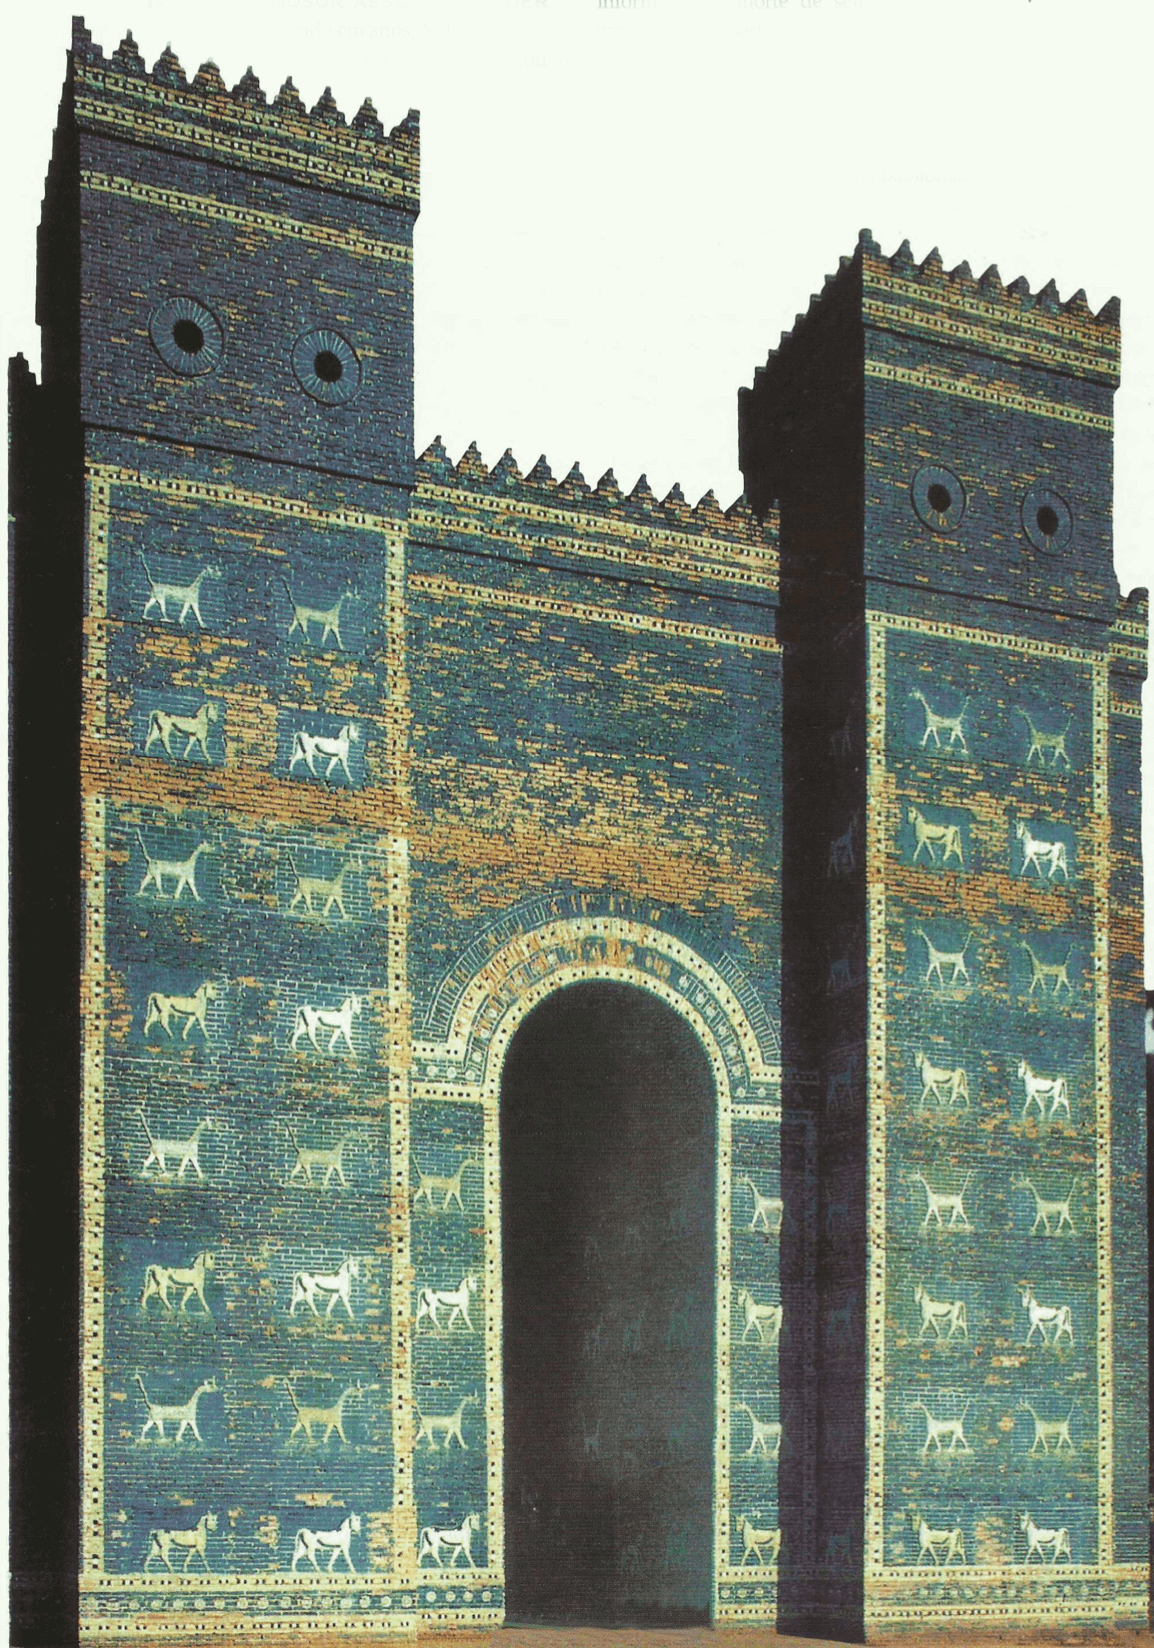 Uma reconstituição da porta de Ishtar, da Babilônia, representada em sua forma final, depois de ter sido revestida com tijolos vitrificados mostrando touros e dragões (sirrush).